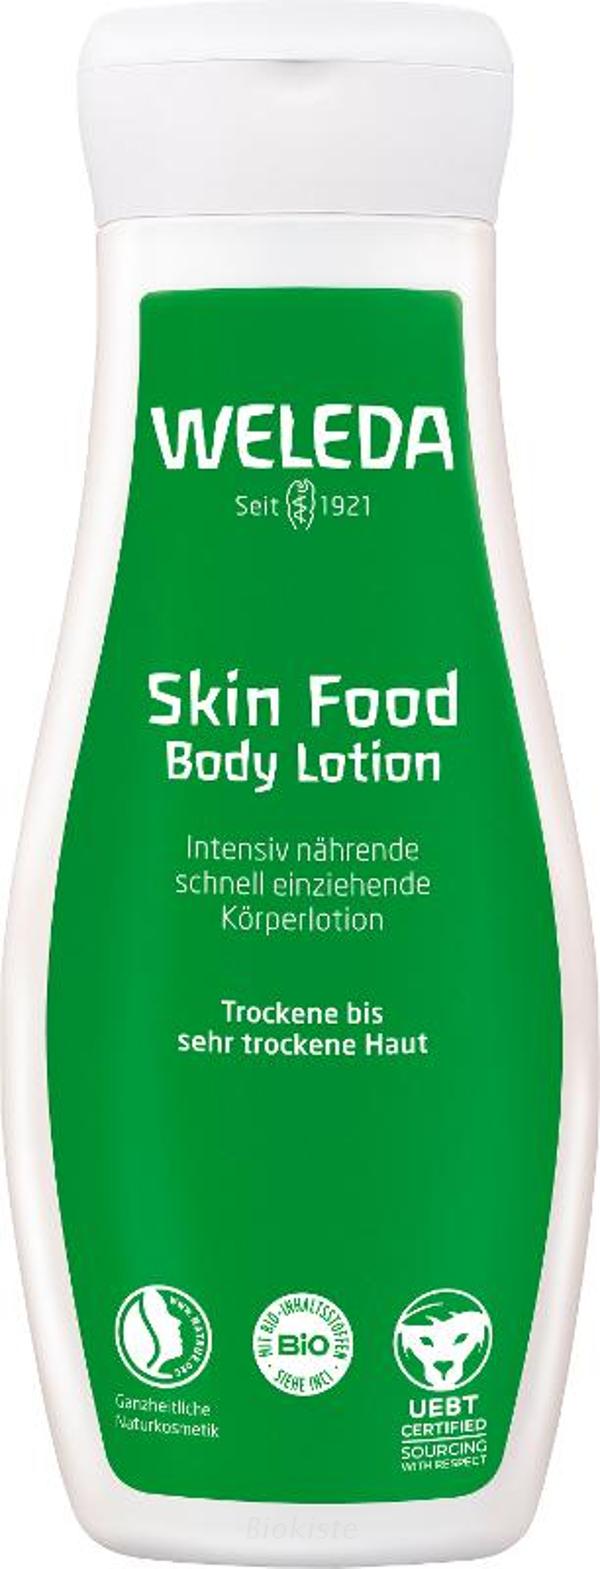 Produktfoto zu Skin Food Body Lotion